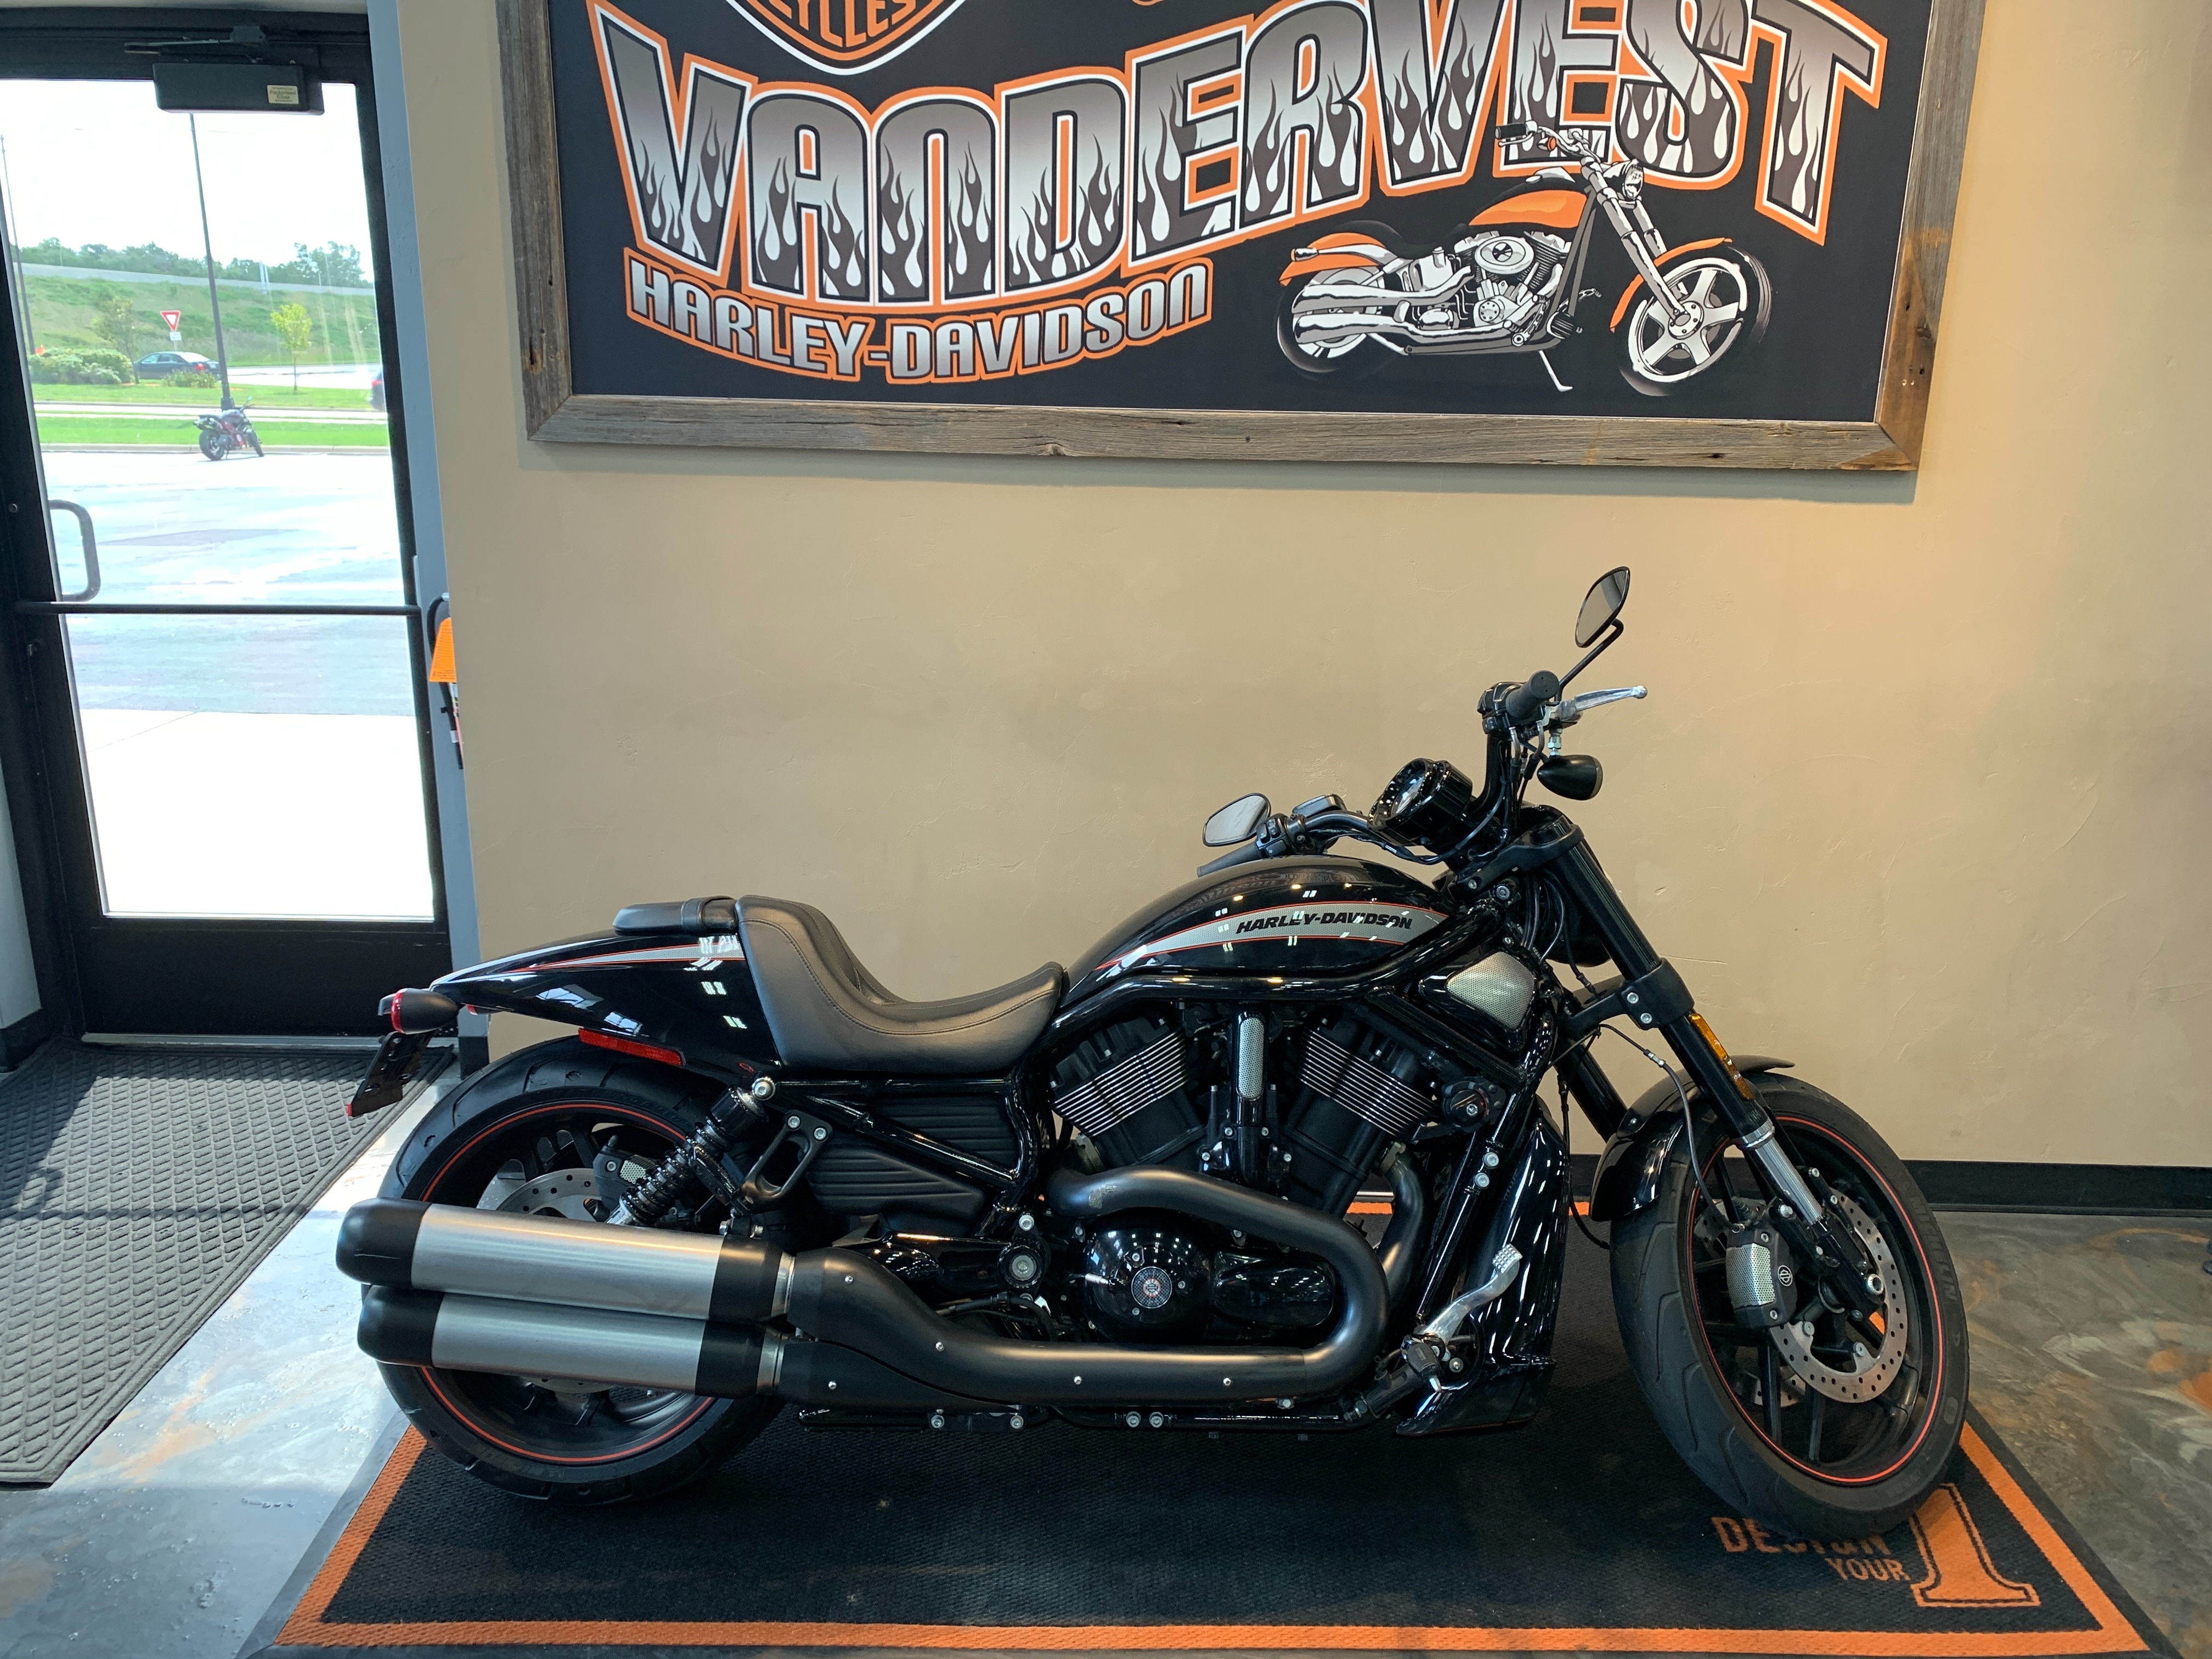 2016 Harley-Davidson V-Rod Night Rod Special at Vandervest Harley-Davidson, Green Bay, WI 54303